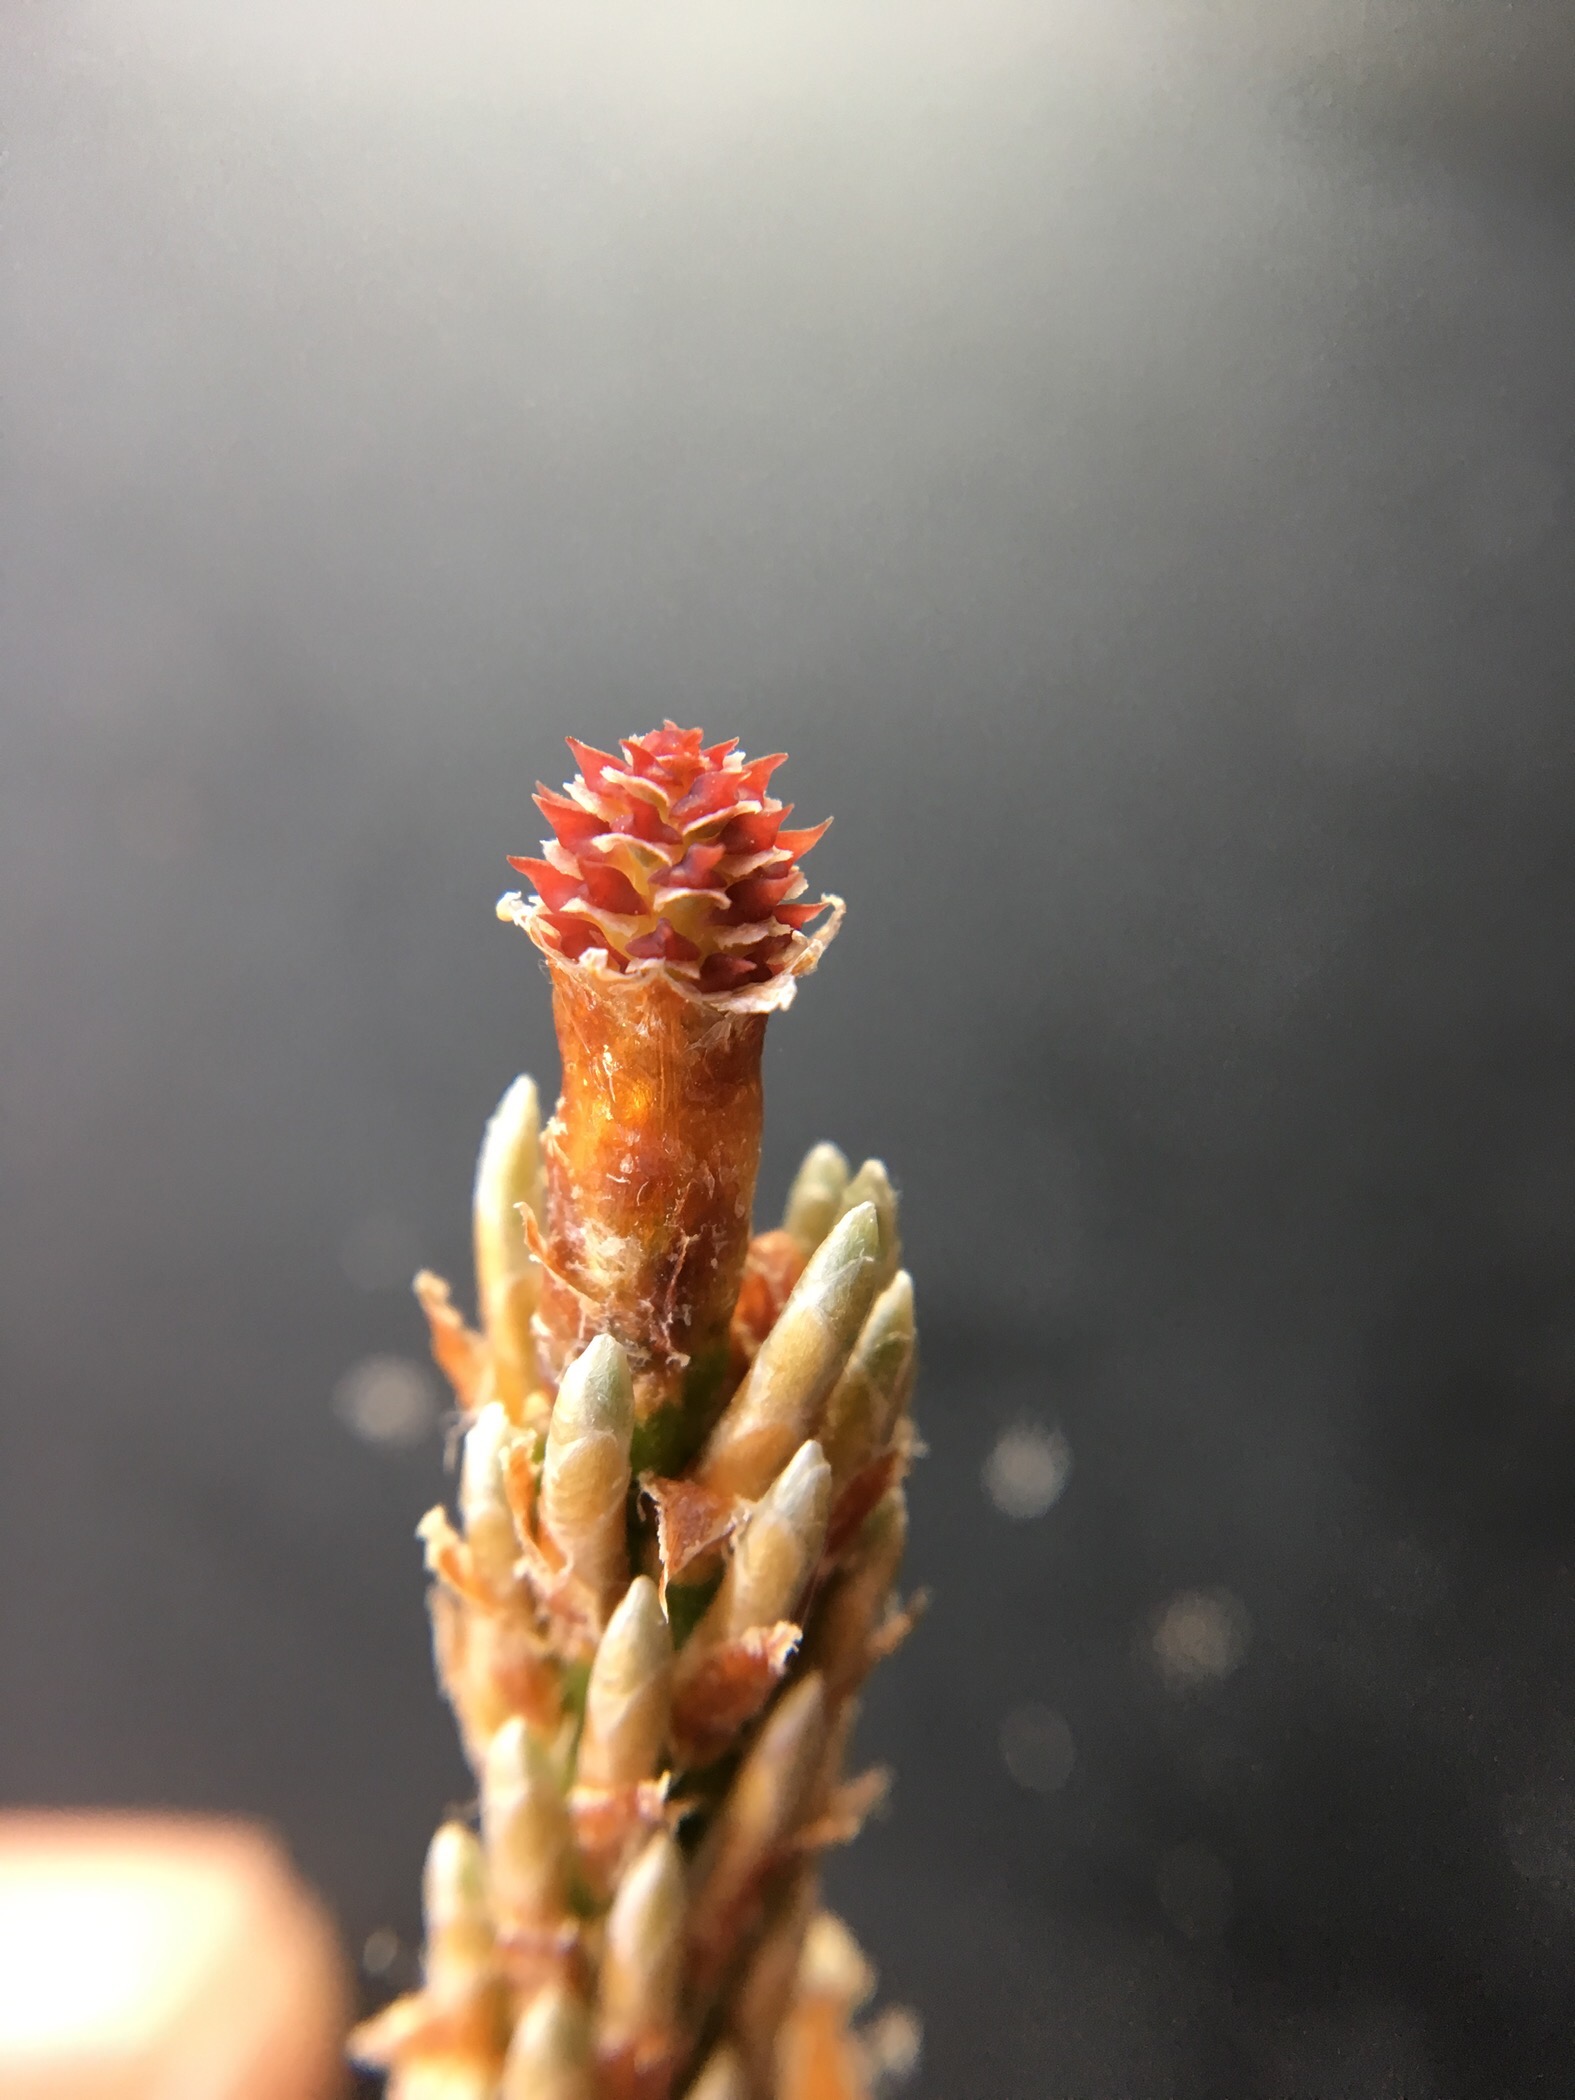 El cono hembra es pequeño y rojo, la punta tiene ramas recién alargadas. Debajo del cono hay racimos de hojas que apenas comienzan a expandirse.